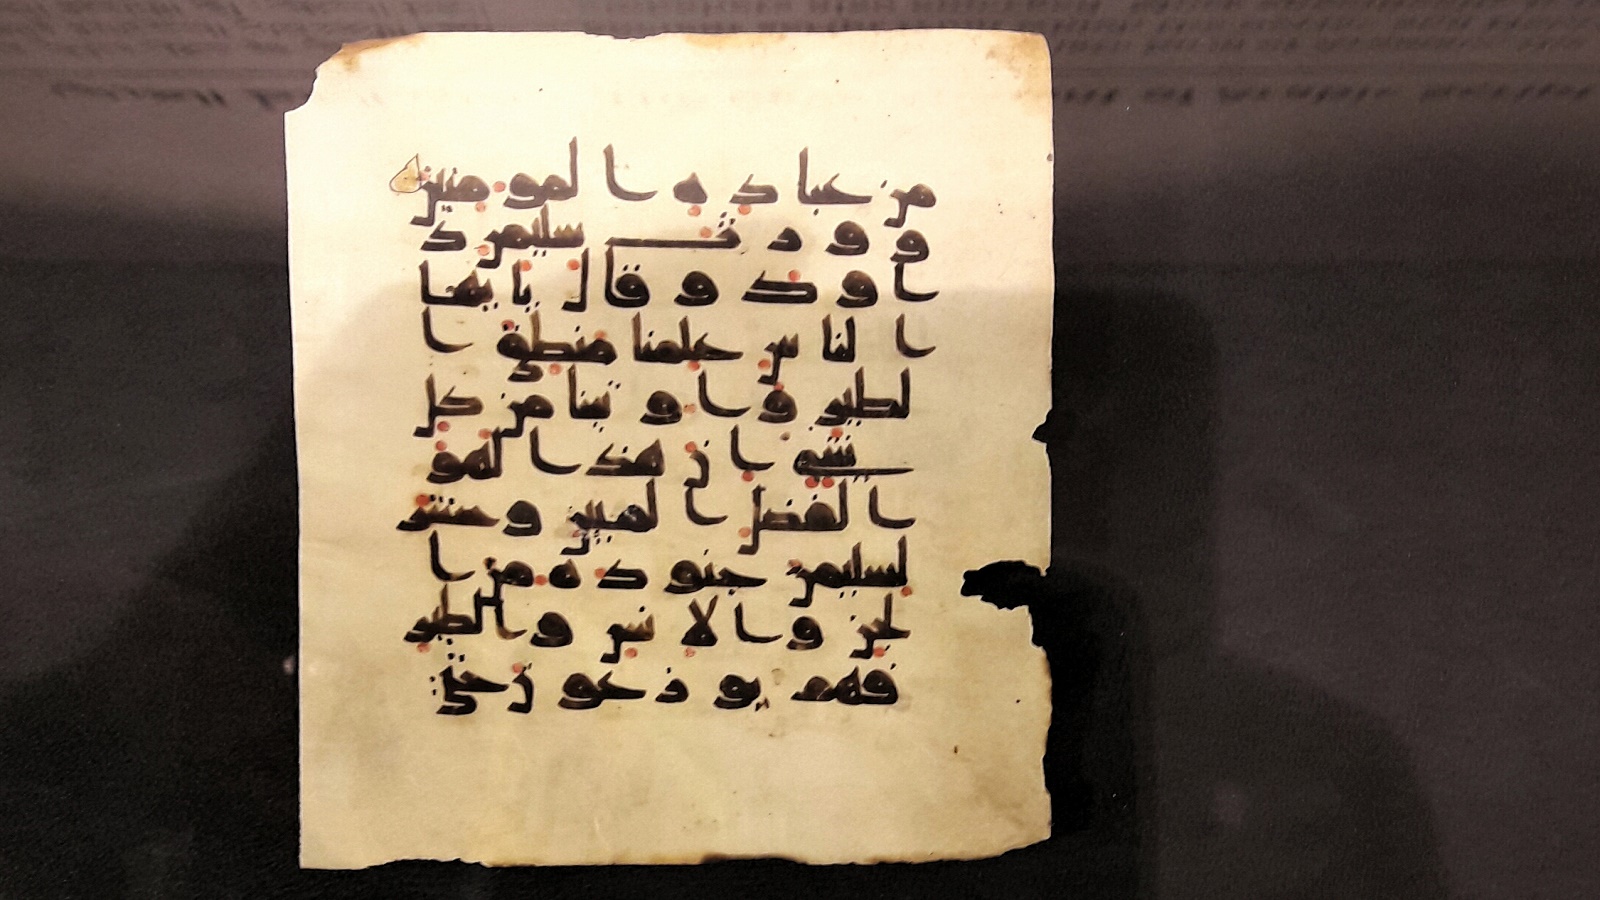 ورقة من مصحف قديم مع آيات من سورة النمل، الحقبة العباسية الأولى.